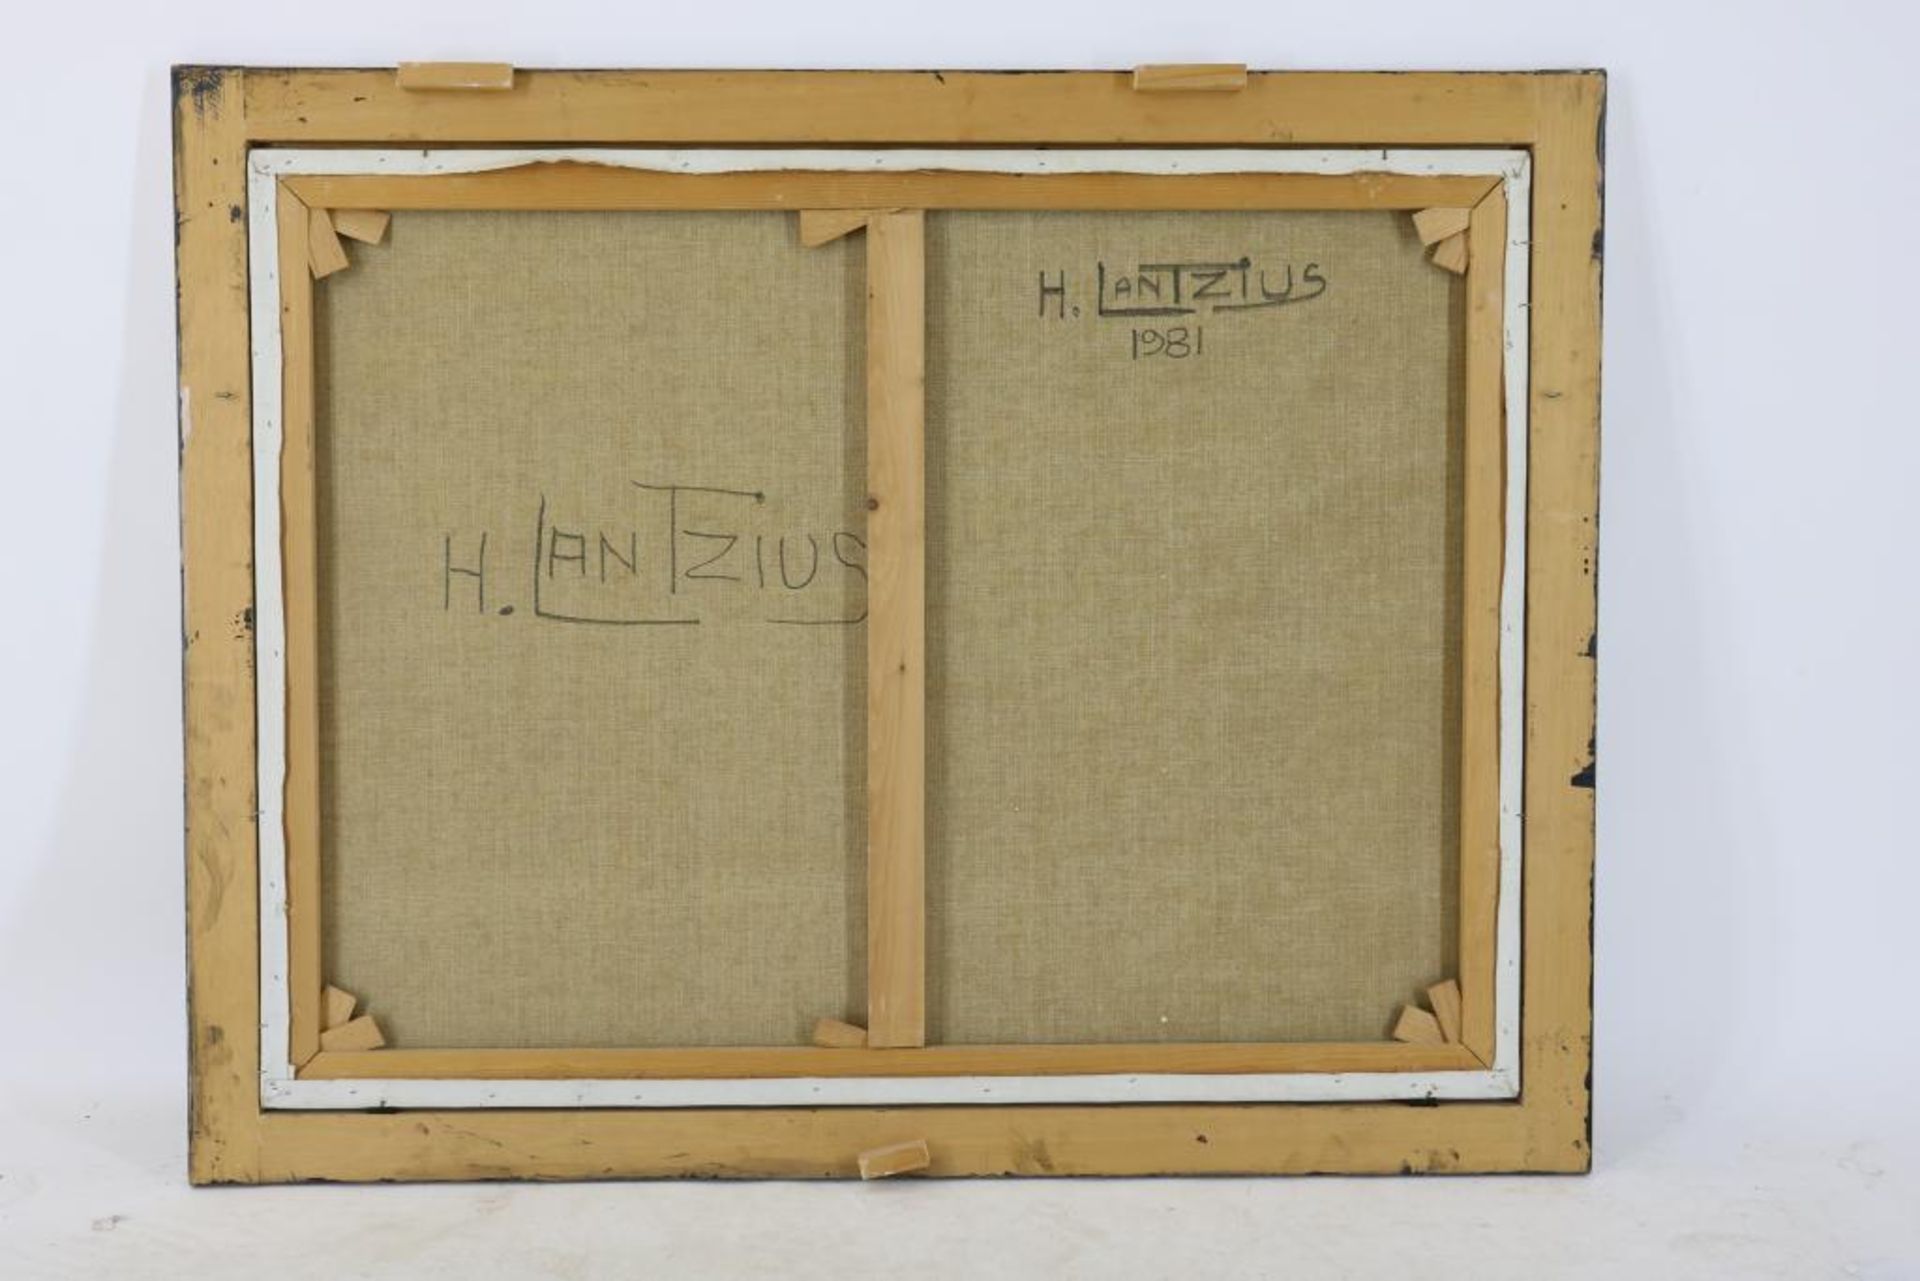 Lantzius, houten gevel, doek - Image 2 of 3